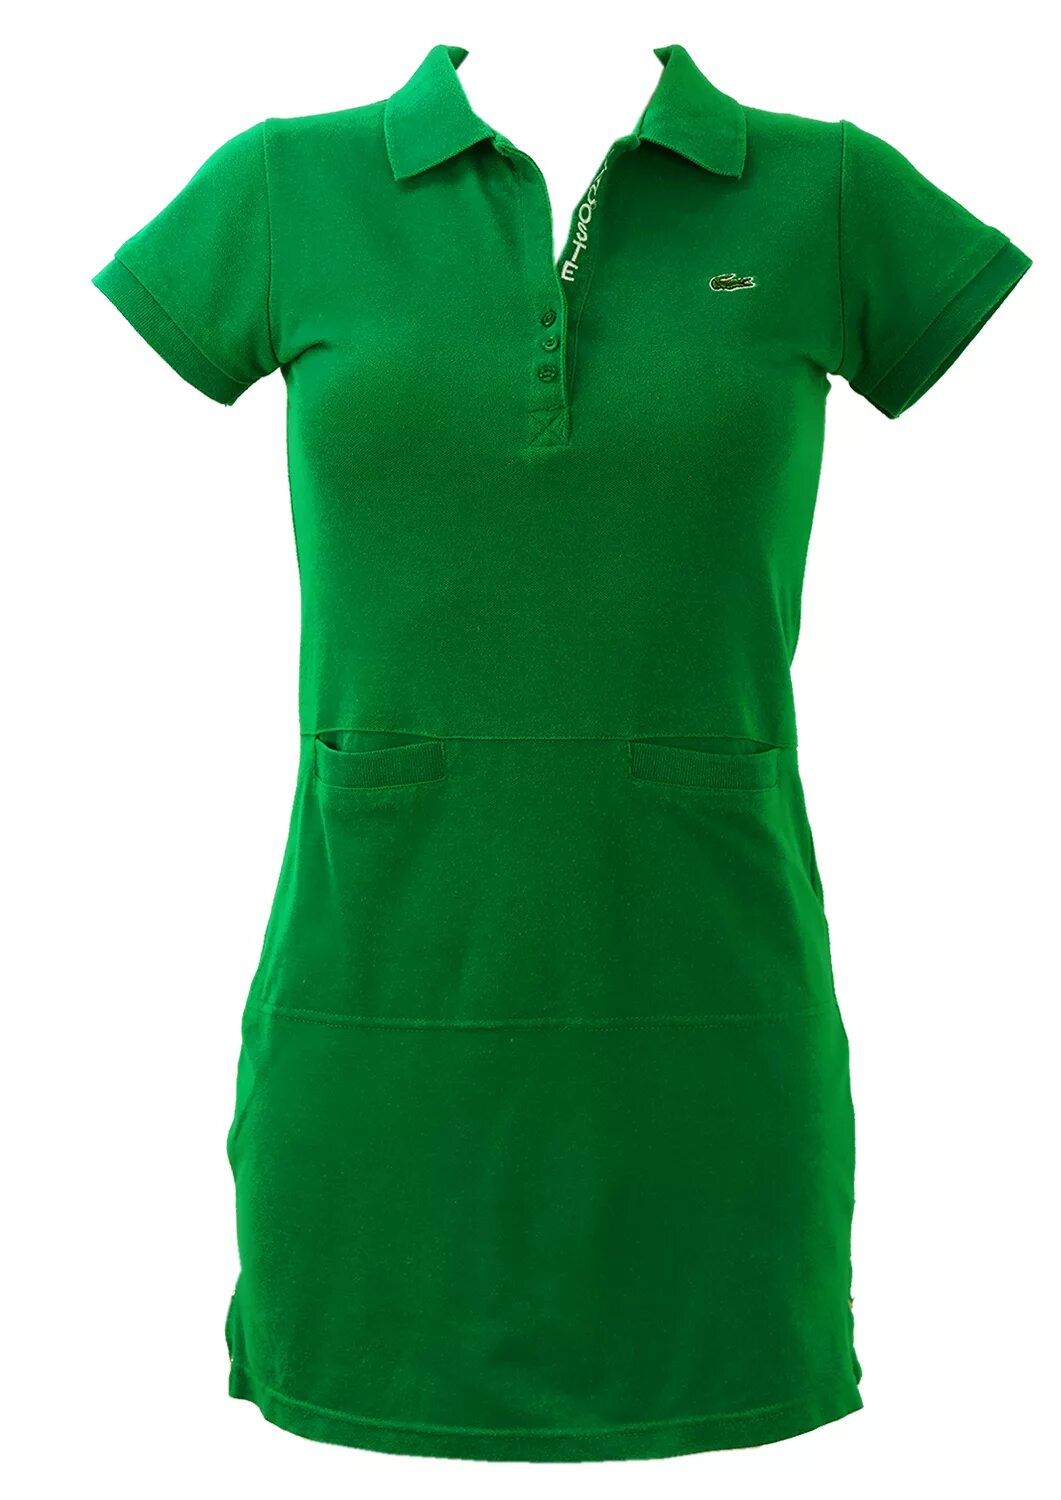 Платье лакост. Lacoste платье зеленое ef0802. Лакост платье 2023. Зеленое поло Lacoste. Лакосте женская поло зелёная 2023.